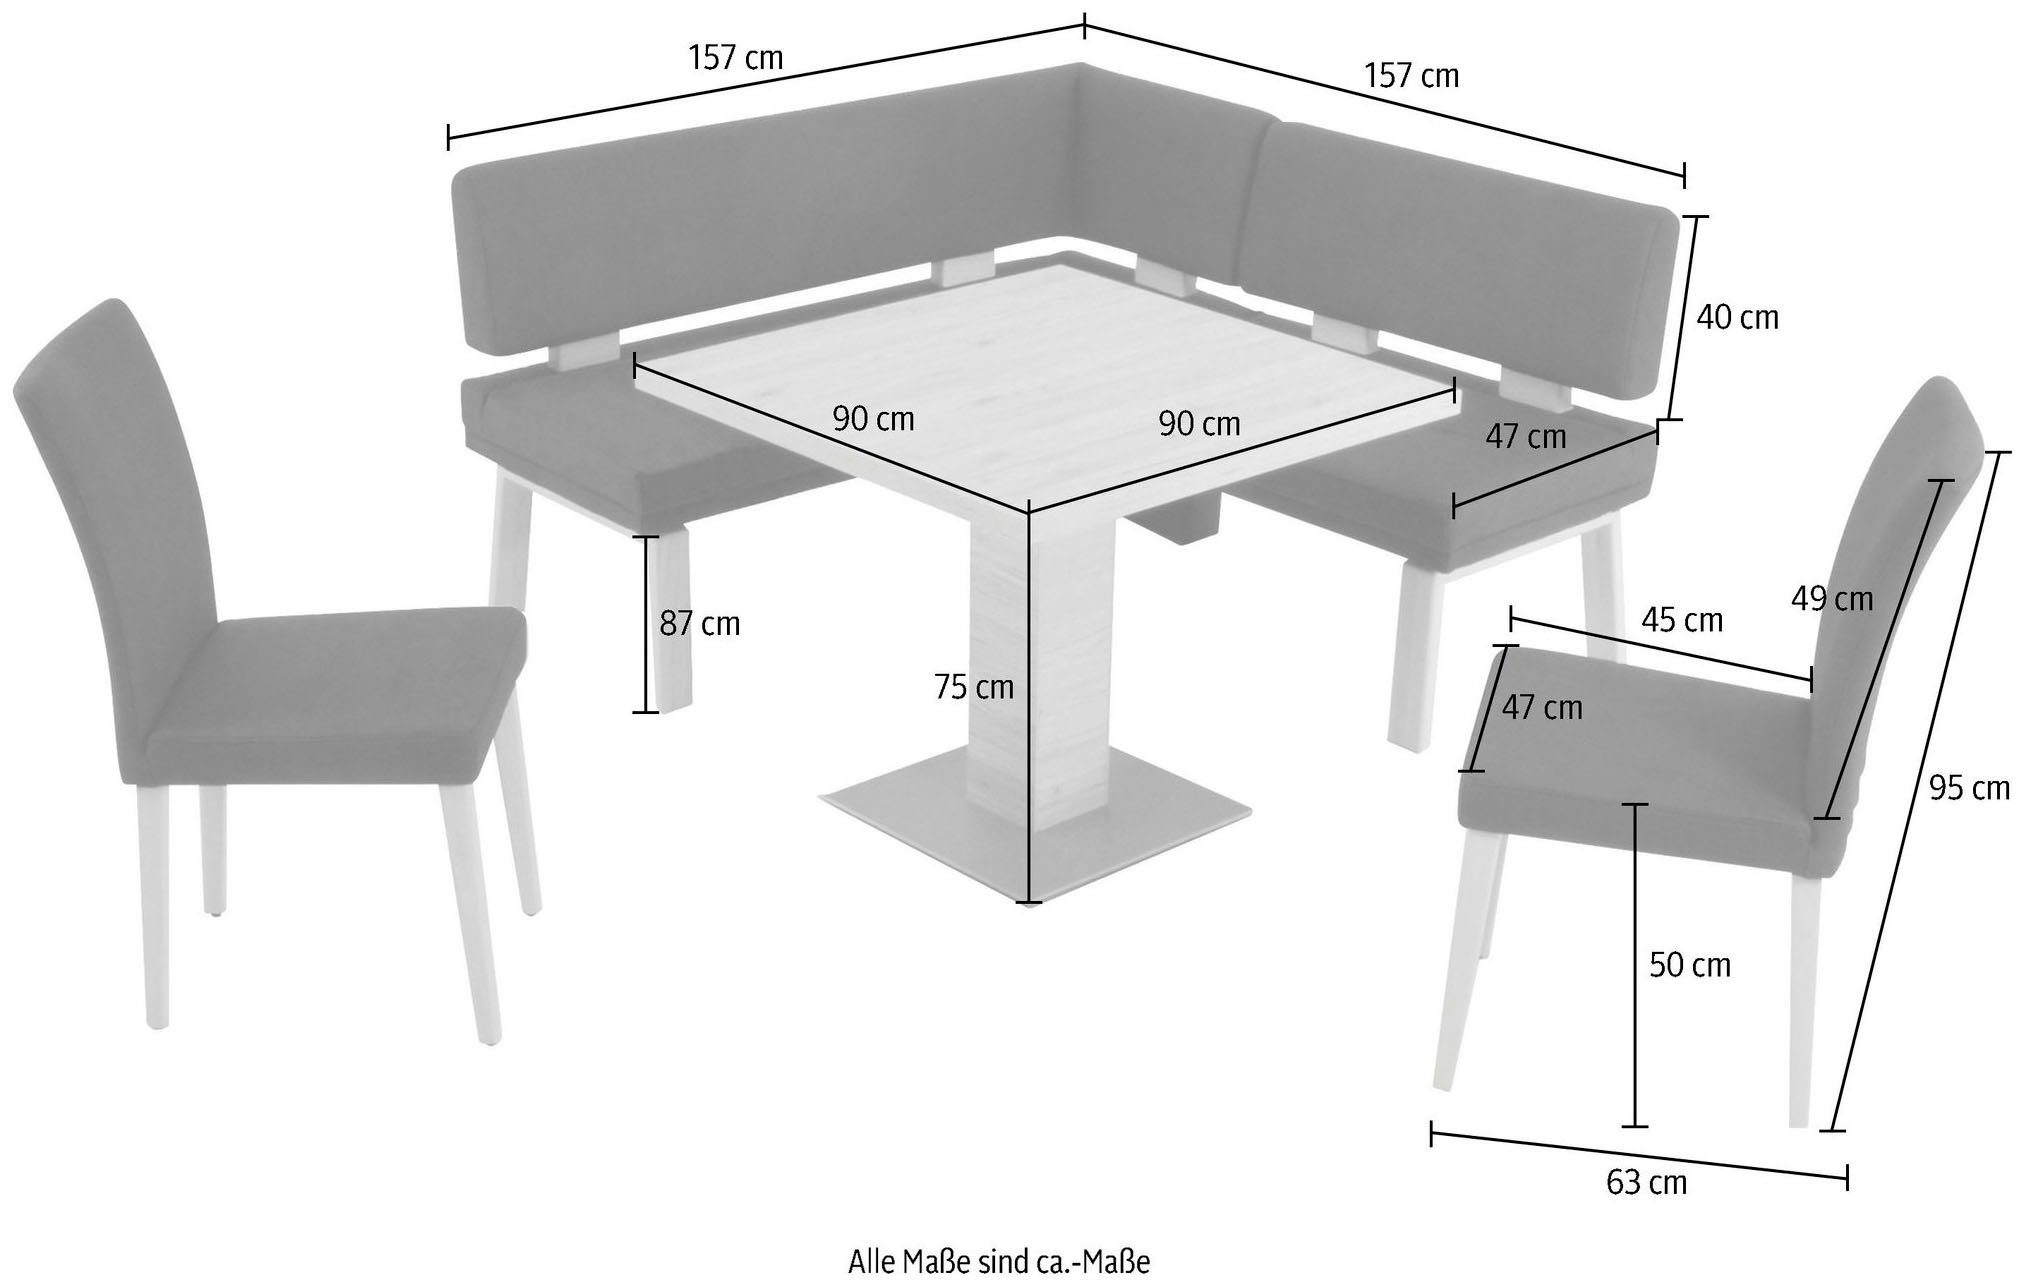 K+W Komfort & Wohnen gleichschenklig darkbrown Eiche 4-Fußholzstühle 90x90cm, Eckbankgruppe I, und Santos Tisch 157cm, zwei